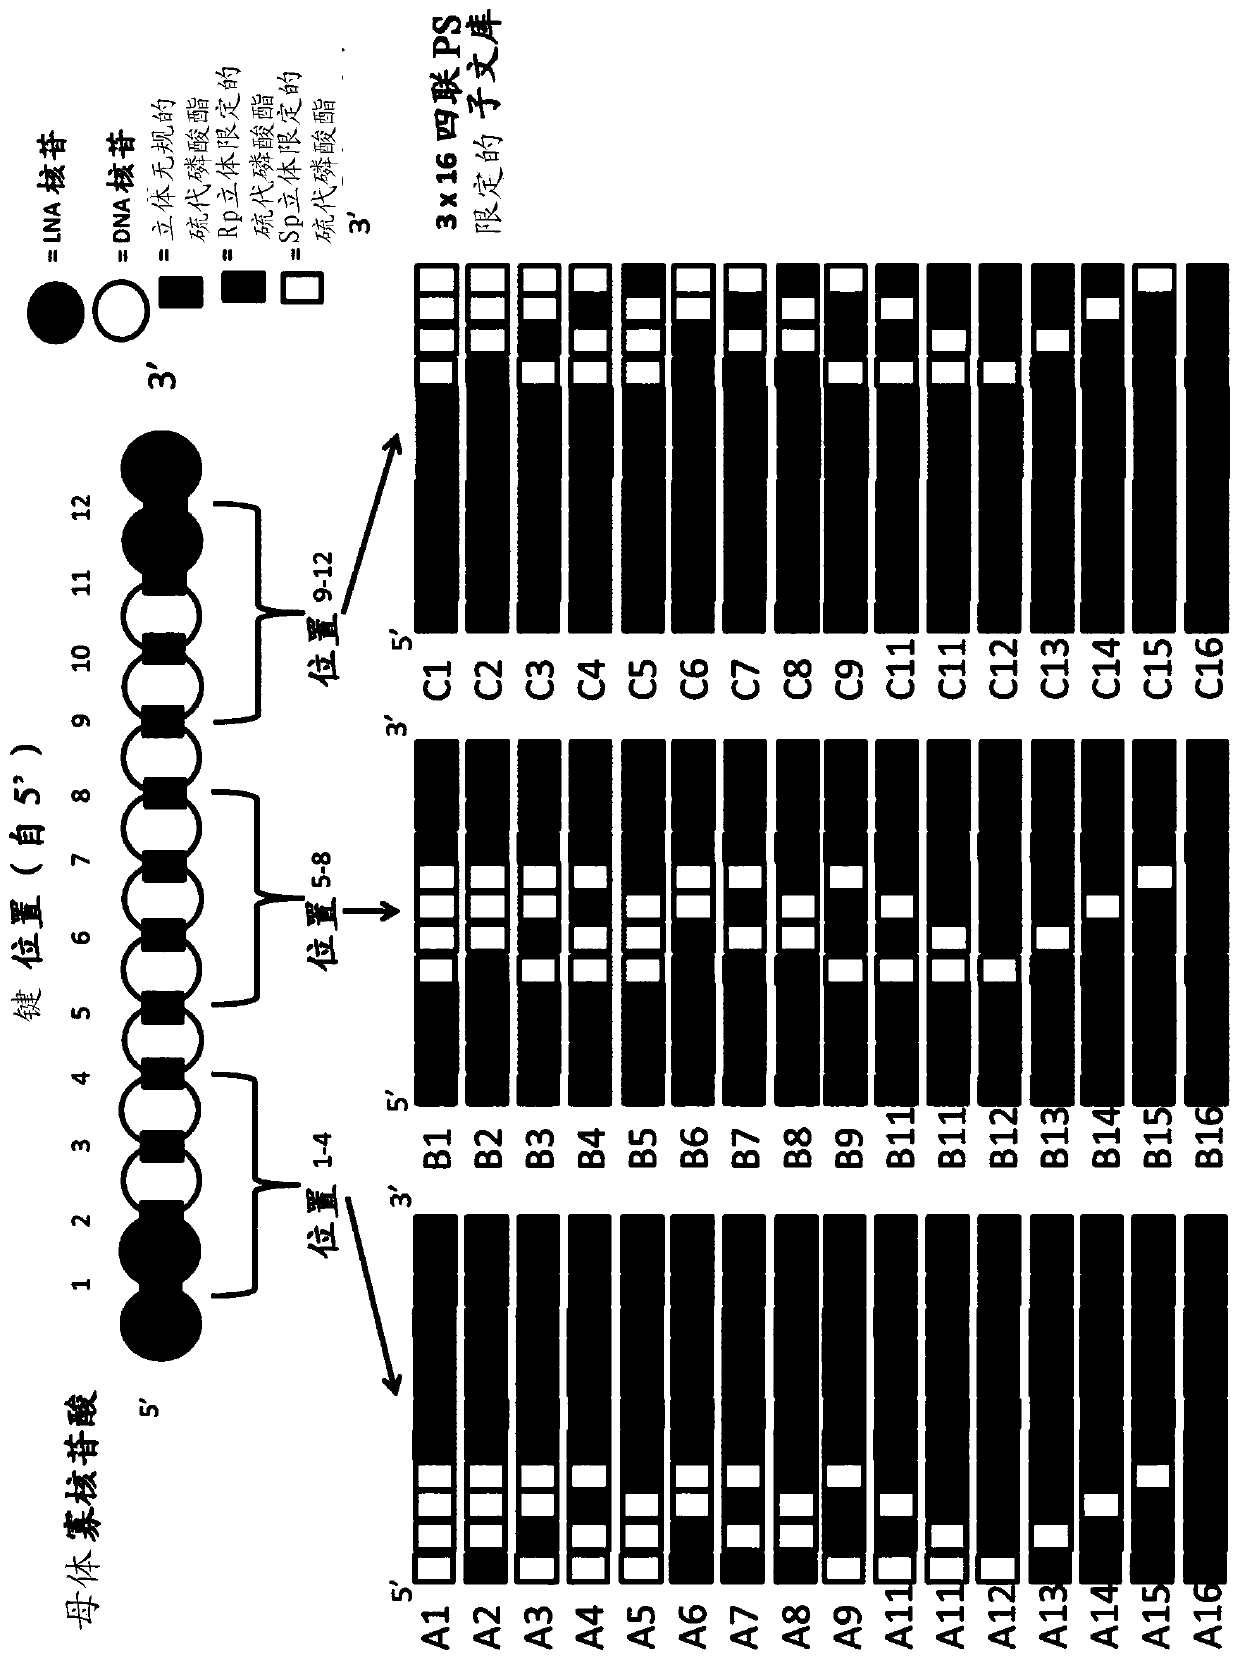 Methods for identifying improved stereodefined phosphorothioate oligonucleotide variants of antisense oligonucleotides utilising sub-libraries of partially stereodefined oligonucleotides